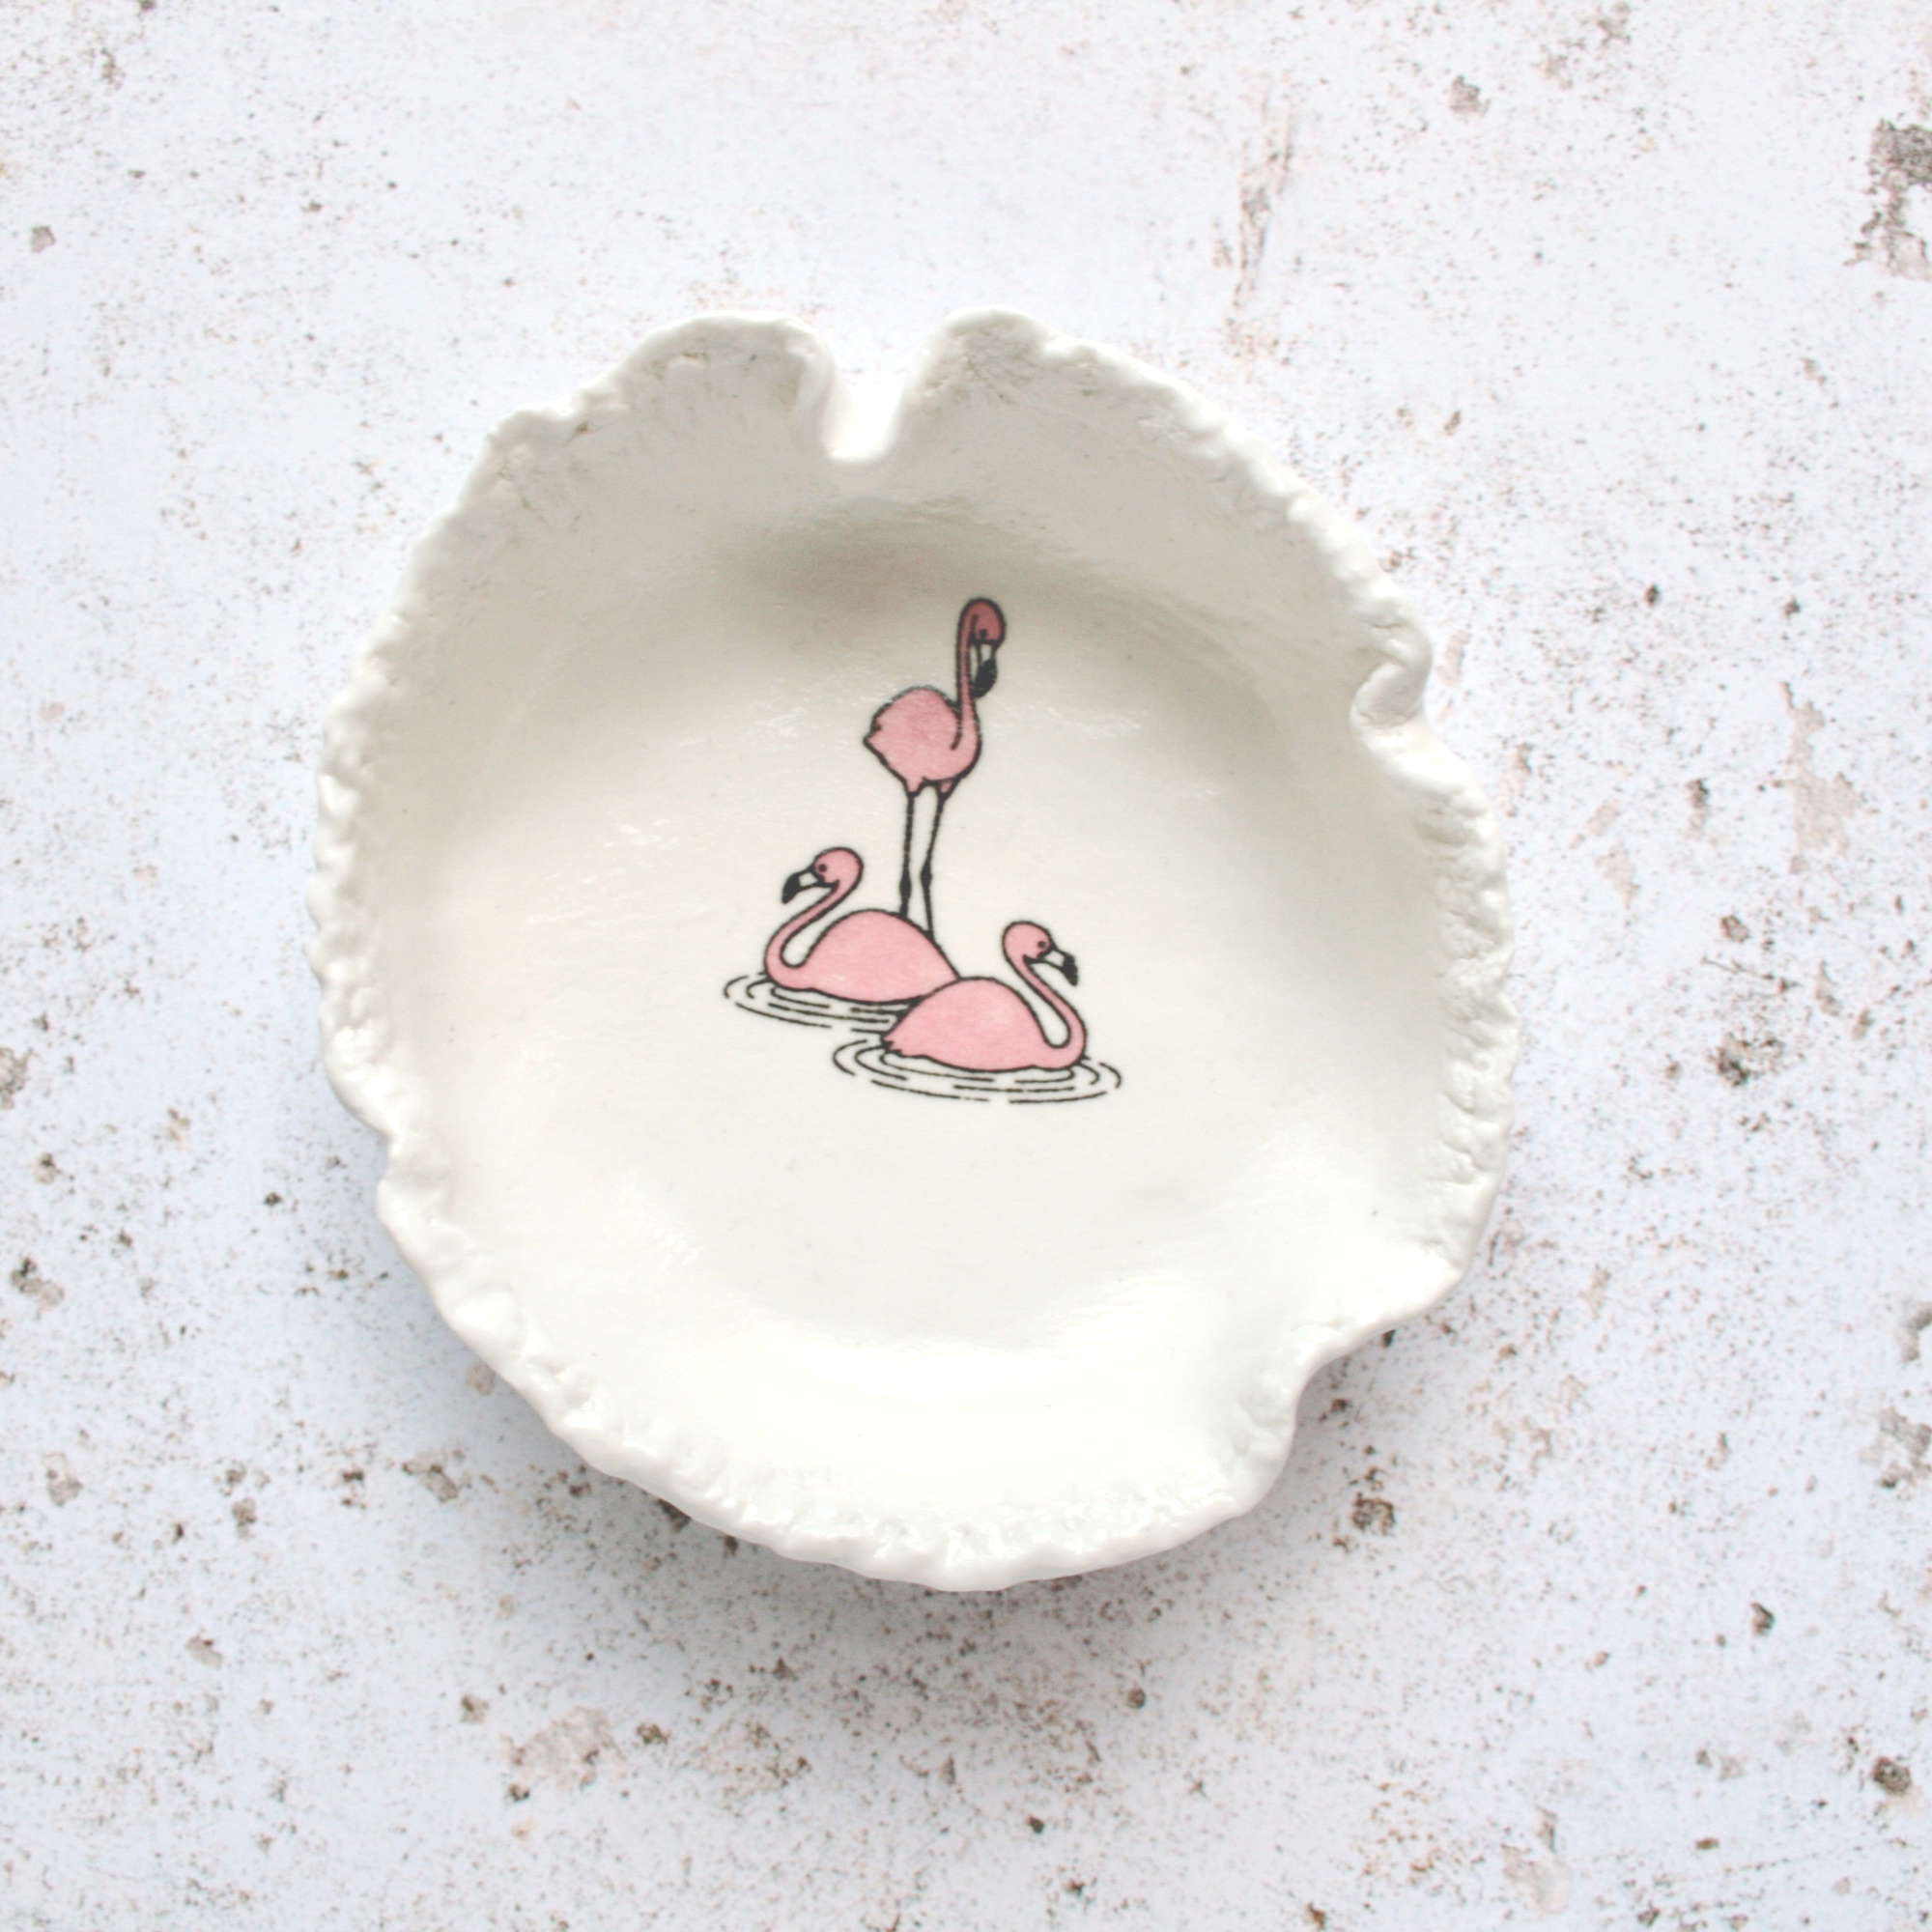 ceramic dish with flamingo design